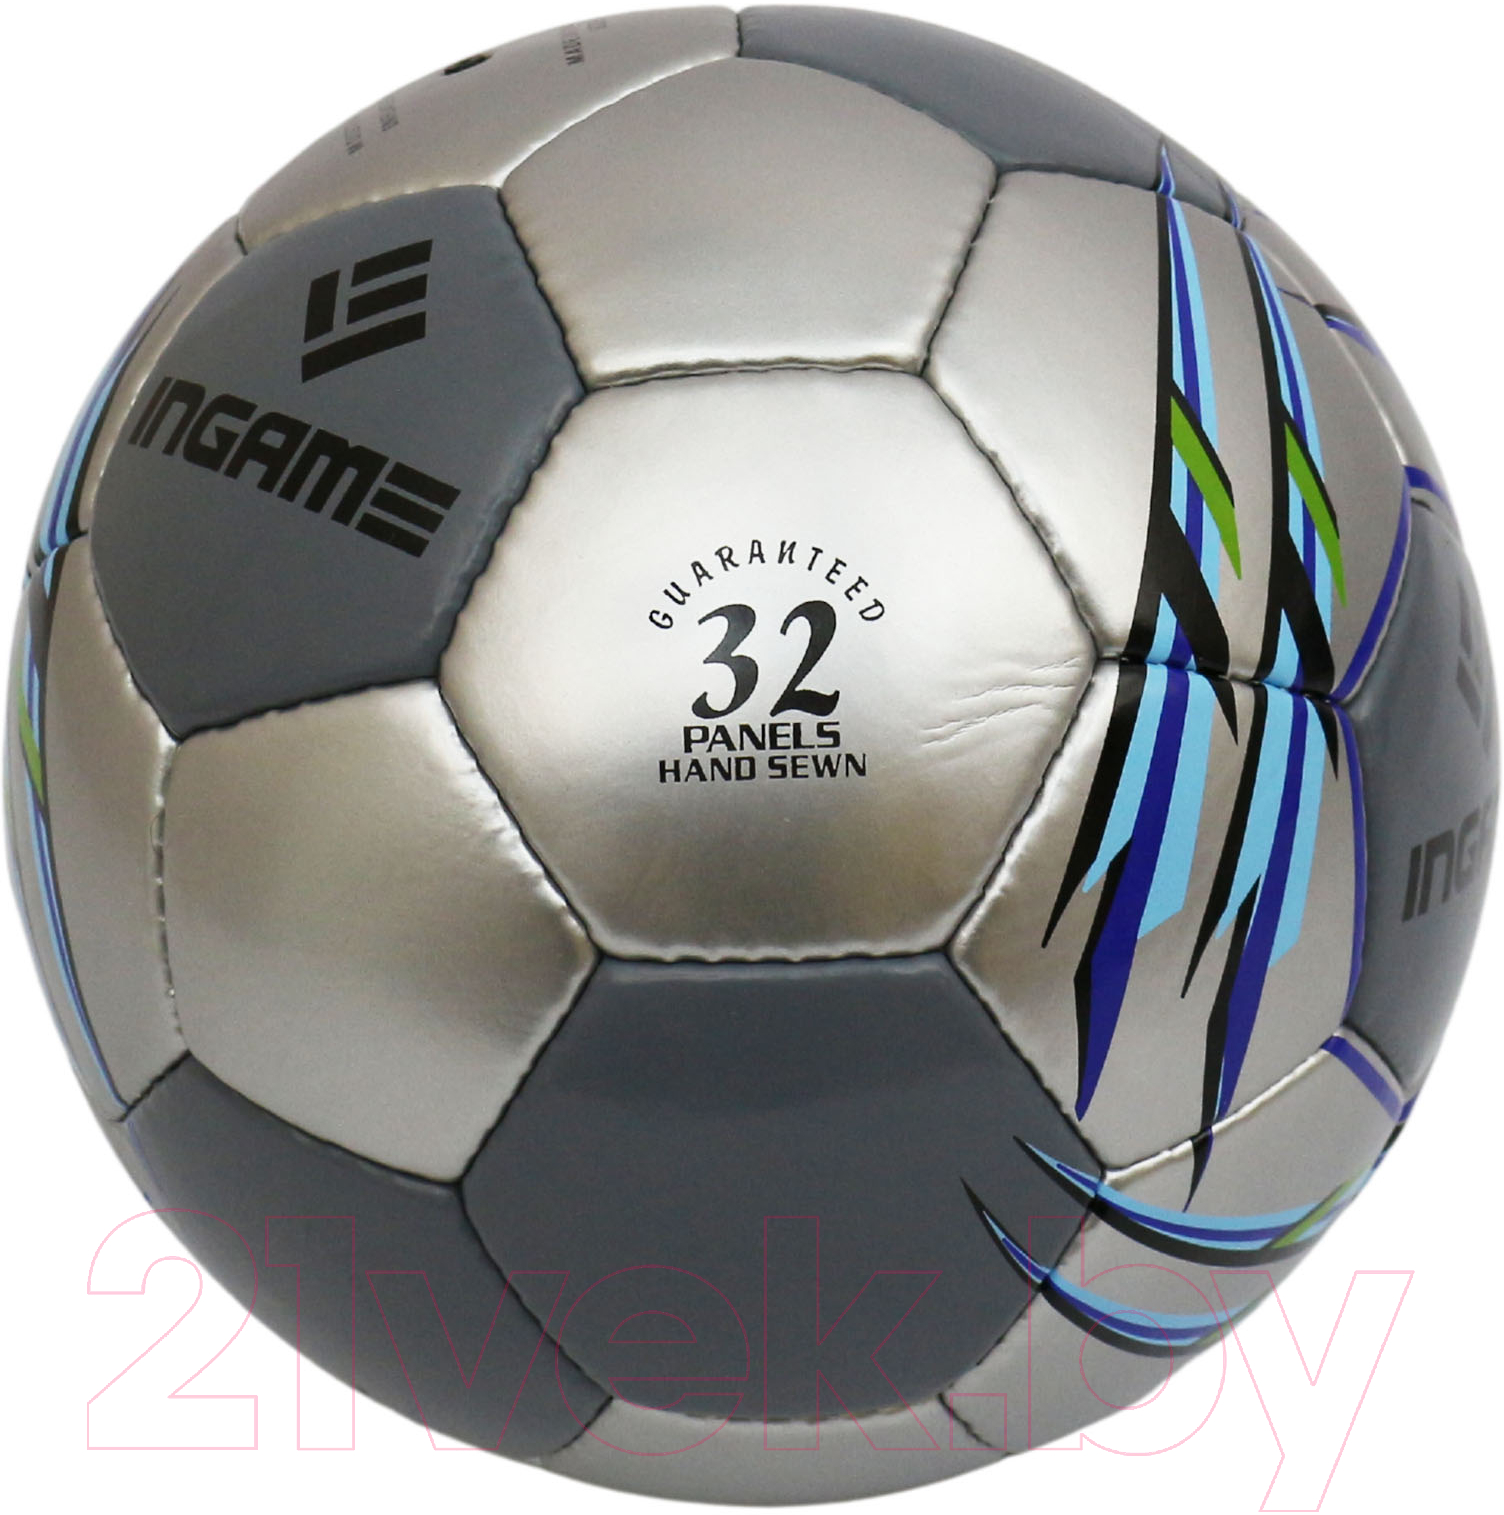 Футбольный мяч Ingame Match 2020